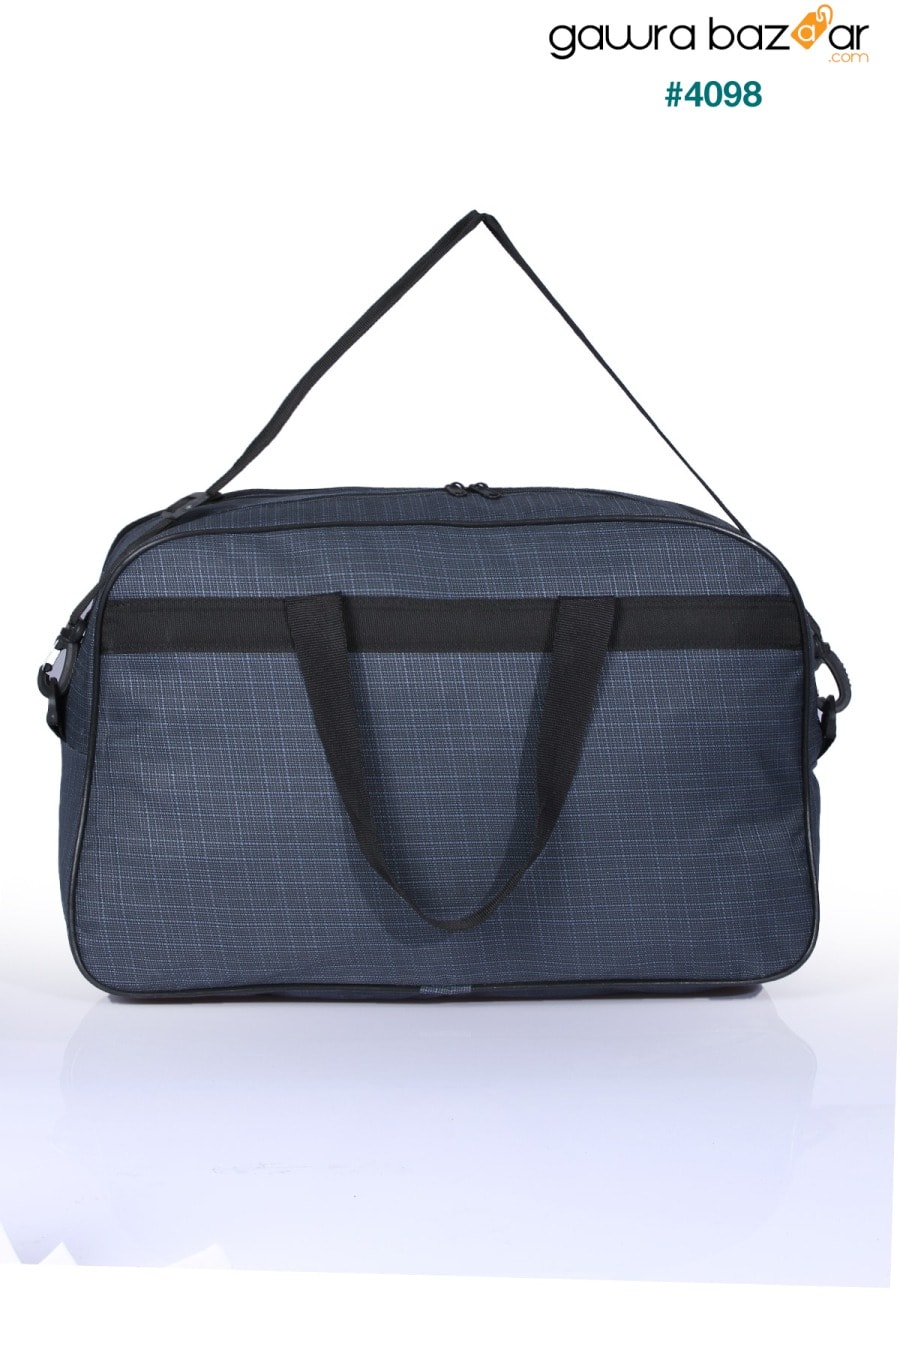 Nil-01 حقيبة مضيفة قماشية للجنسين للسفر والعطلات والمستشفى الرياضي متعدد الأقسام وحقيبة كتف Fiyaka 2